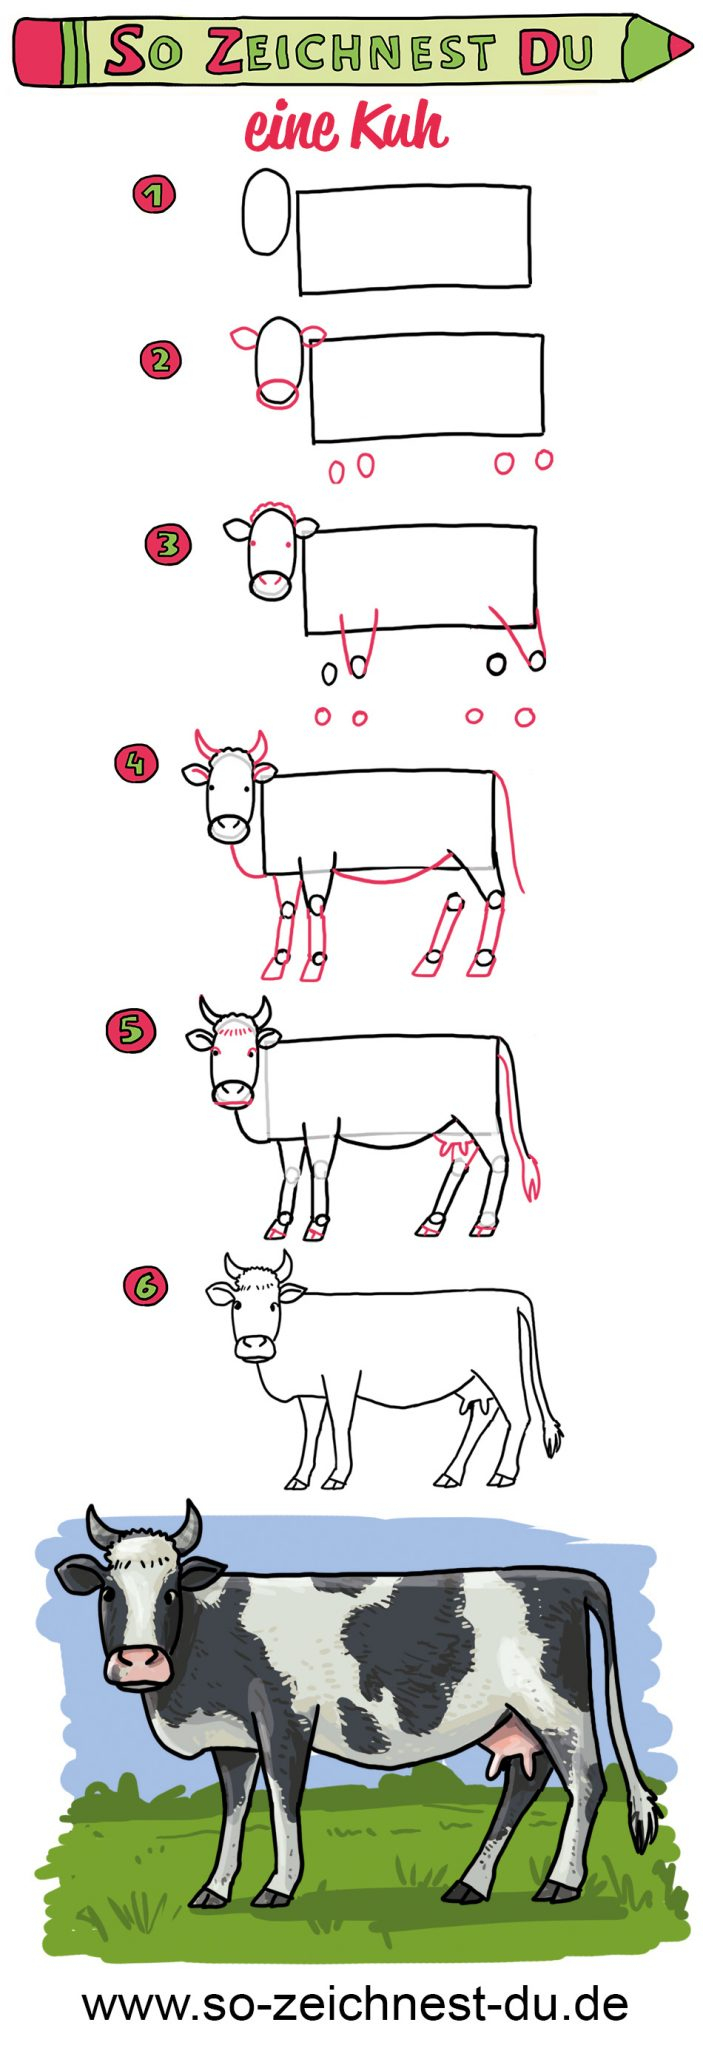 So Zeichnest Du Eine Kuh - Lerne Zeichnen In Wenigen Schritten für Kuh Malen